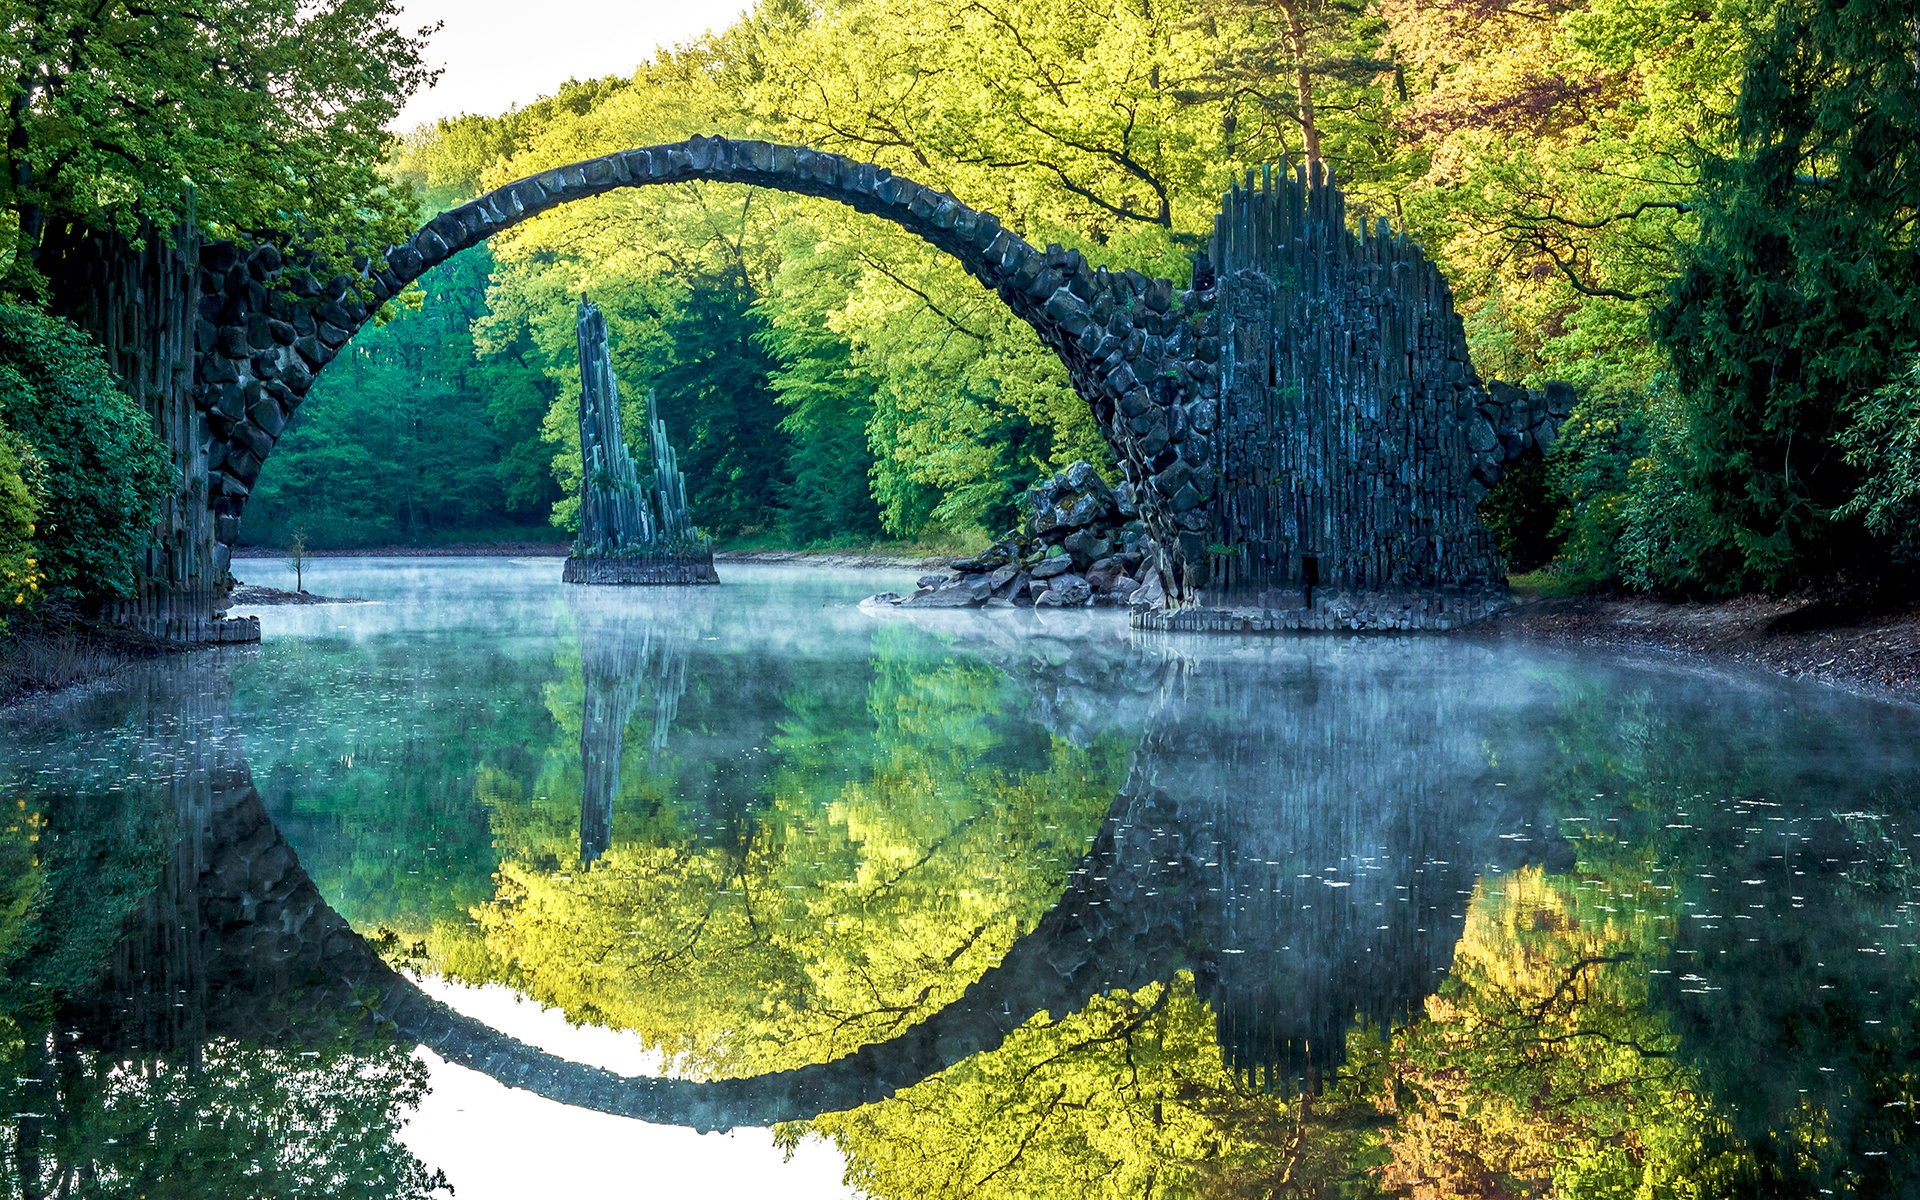 Old Stone Arched Bridge Lake Reflection Desktop Wallpaper - Free ...